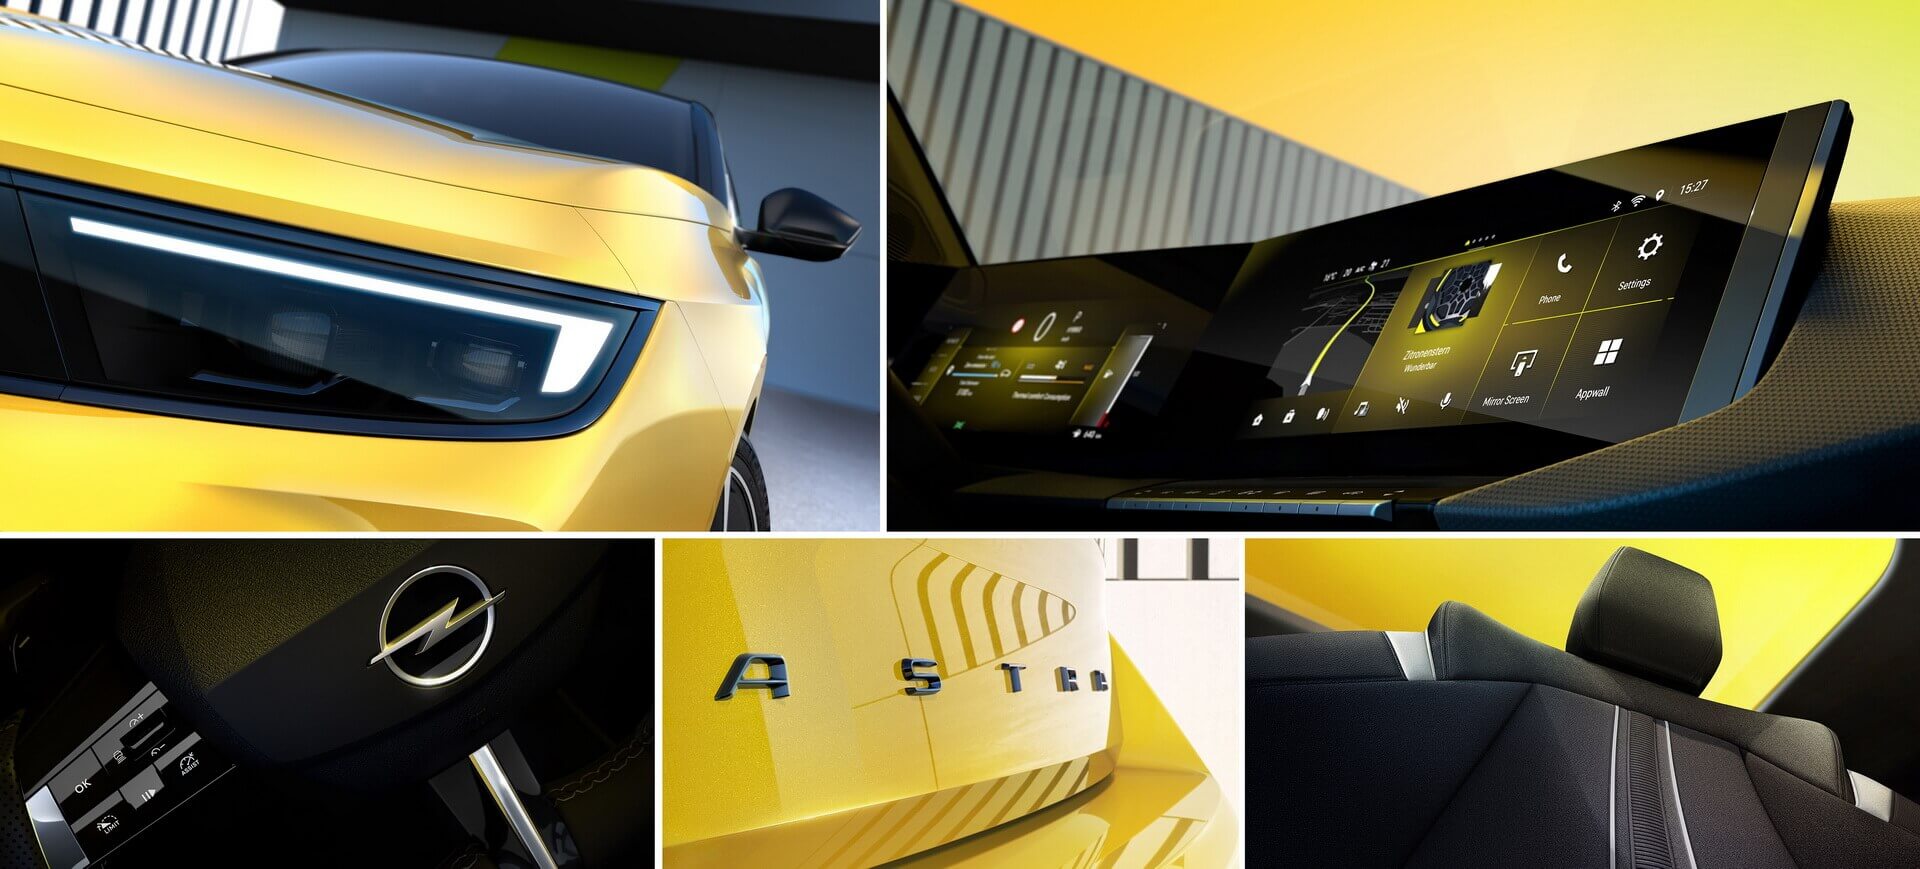 Opel Astra 2021 года: первые официальные изображения электромобиля